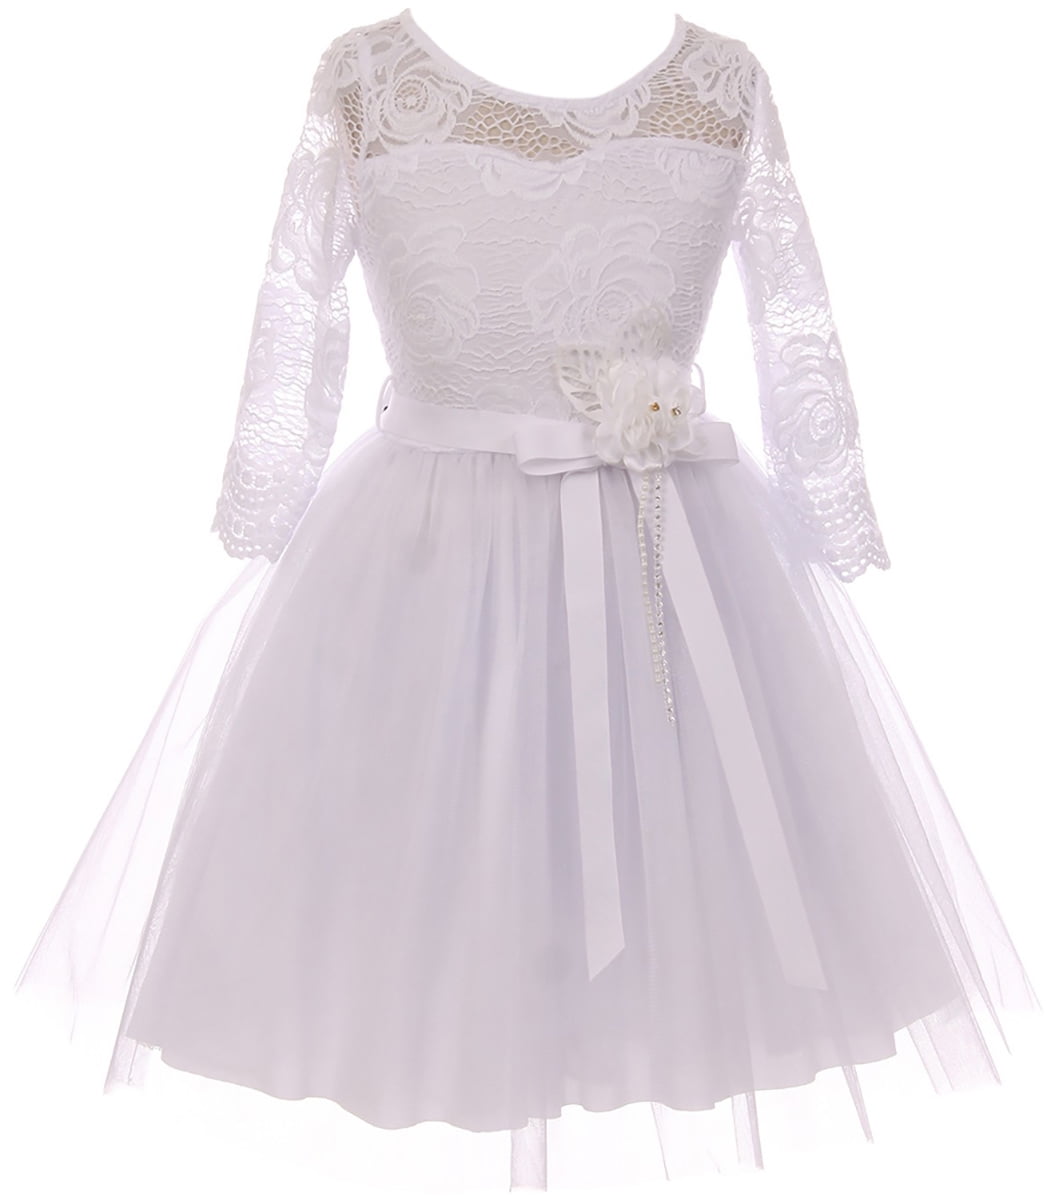 BNY Corner - Little Girl Floral Lace Top Tulle Communion Easter Flower Girl Dress USA White 4 JKS 2098 BNY Corner